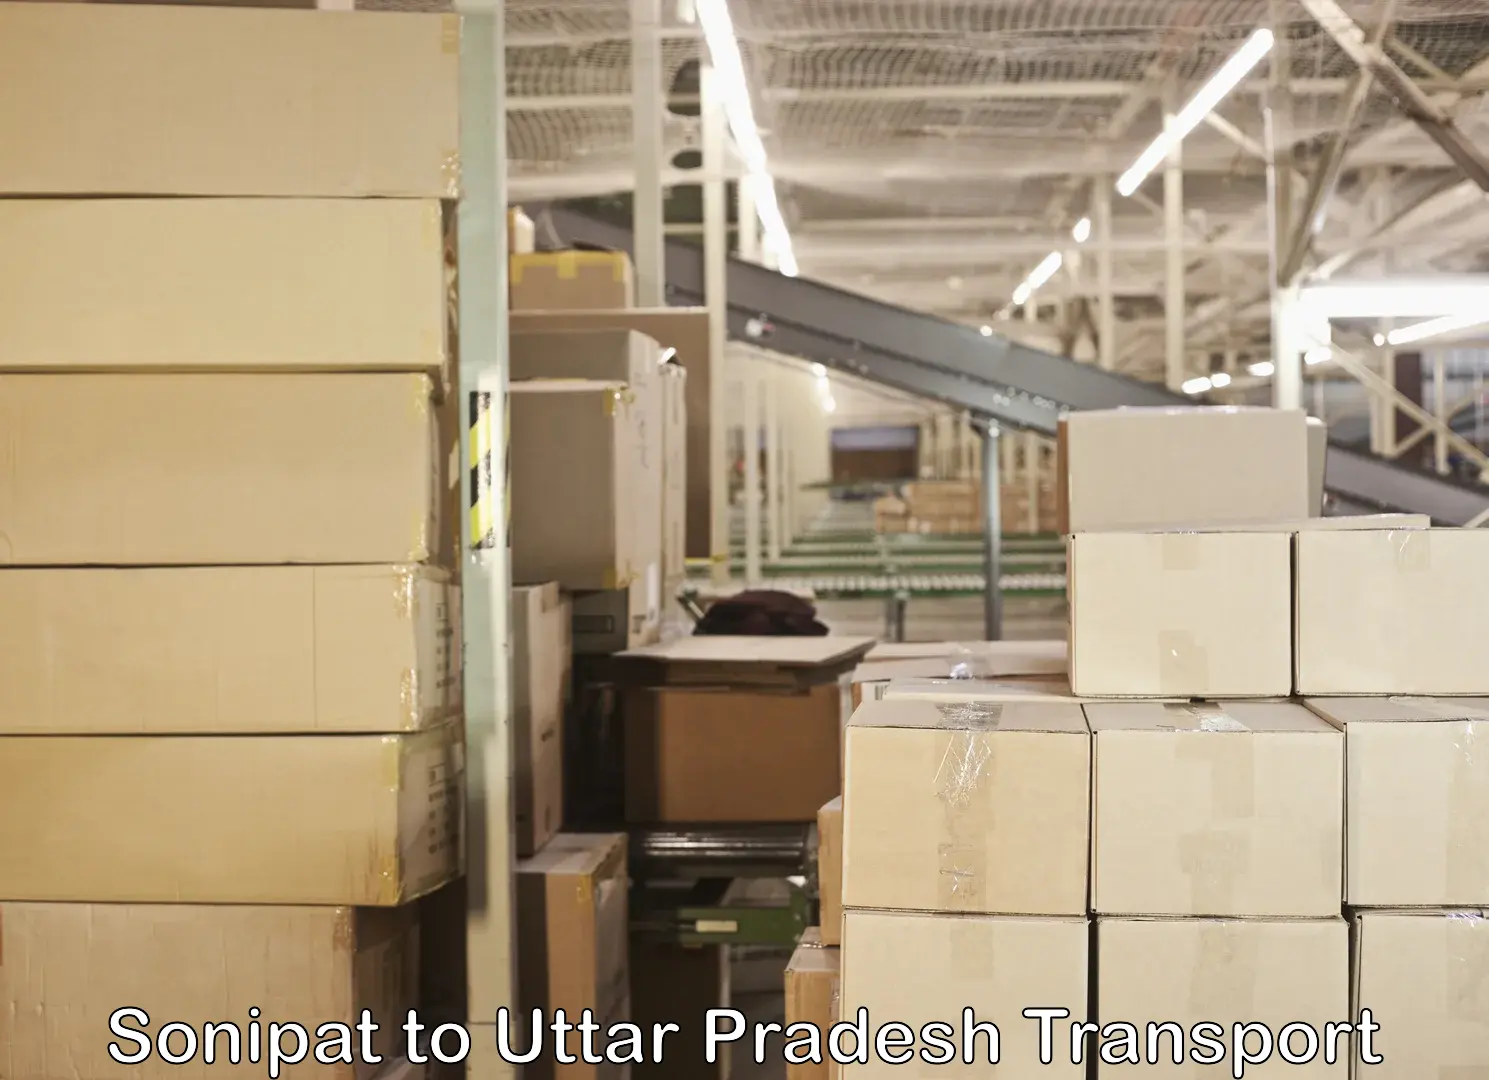 Shipping partner Sonipat to Uttar Pradesh